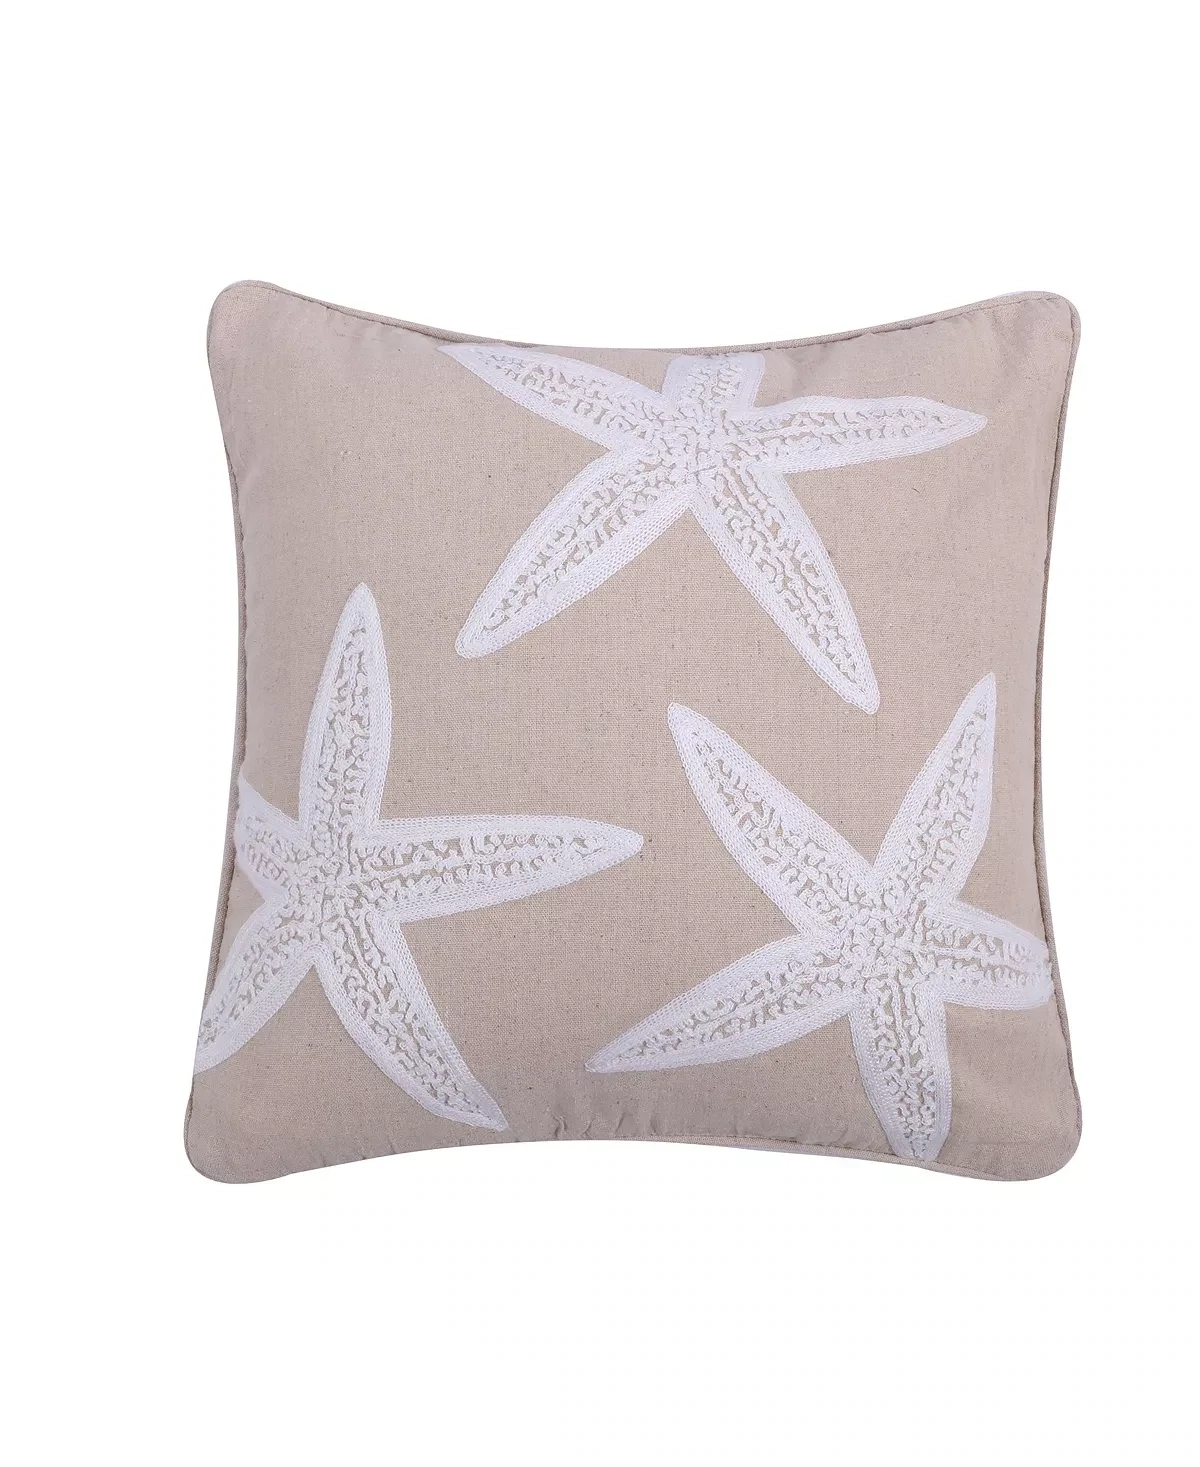 Levtex Home ''Starfish'' Throw Pillow, Beig/Green, 18X18